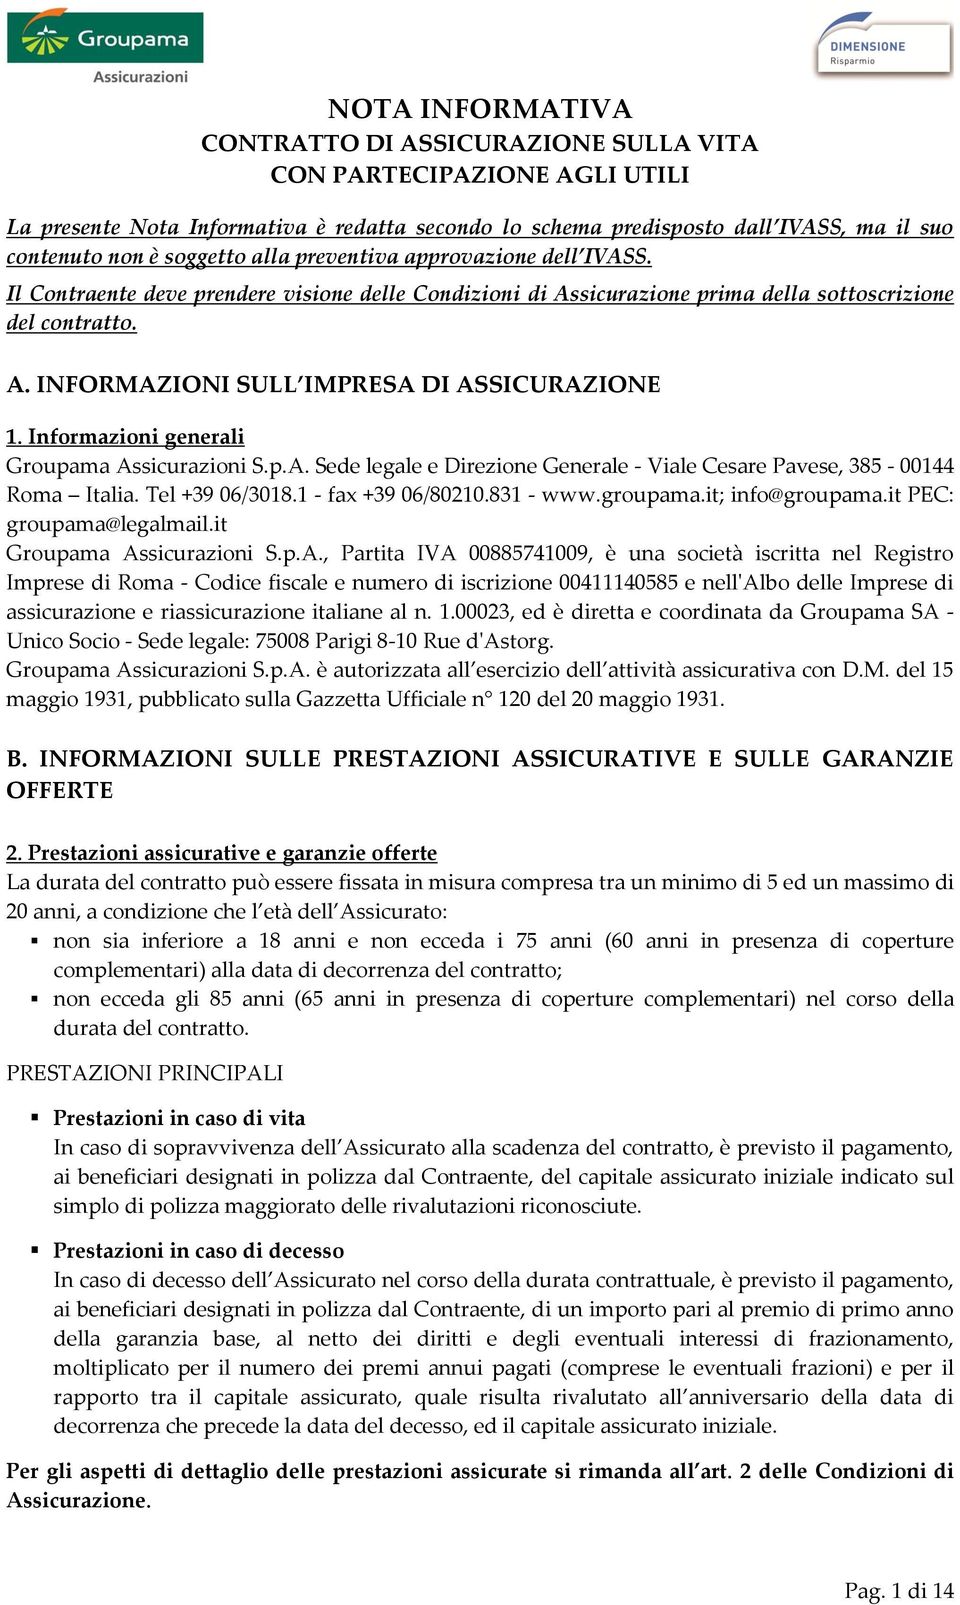 Informazioni generali Groupama Assicurazioni S.p.A. Sede legale e Direzione Generale - Viale Cesare Pavese, 385-00144 Roma Italia. Tel +39 06/3018.1 - fax +39 06/80210.831 - www.groupama.